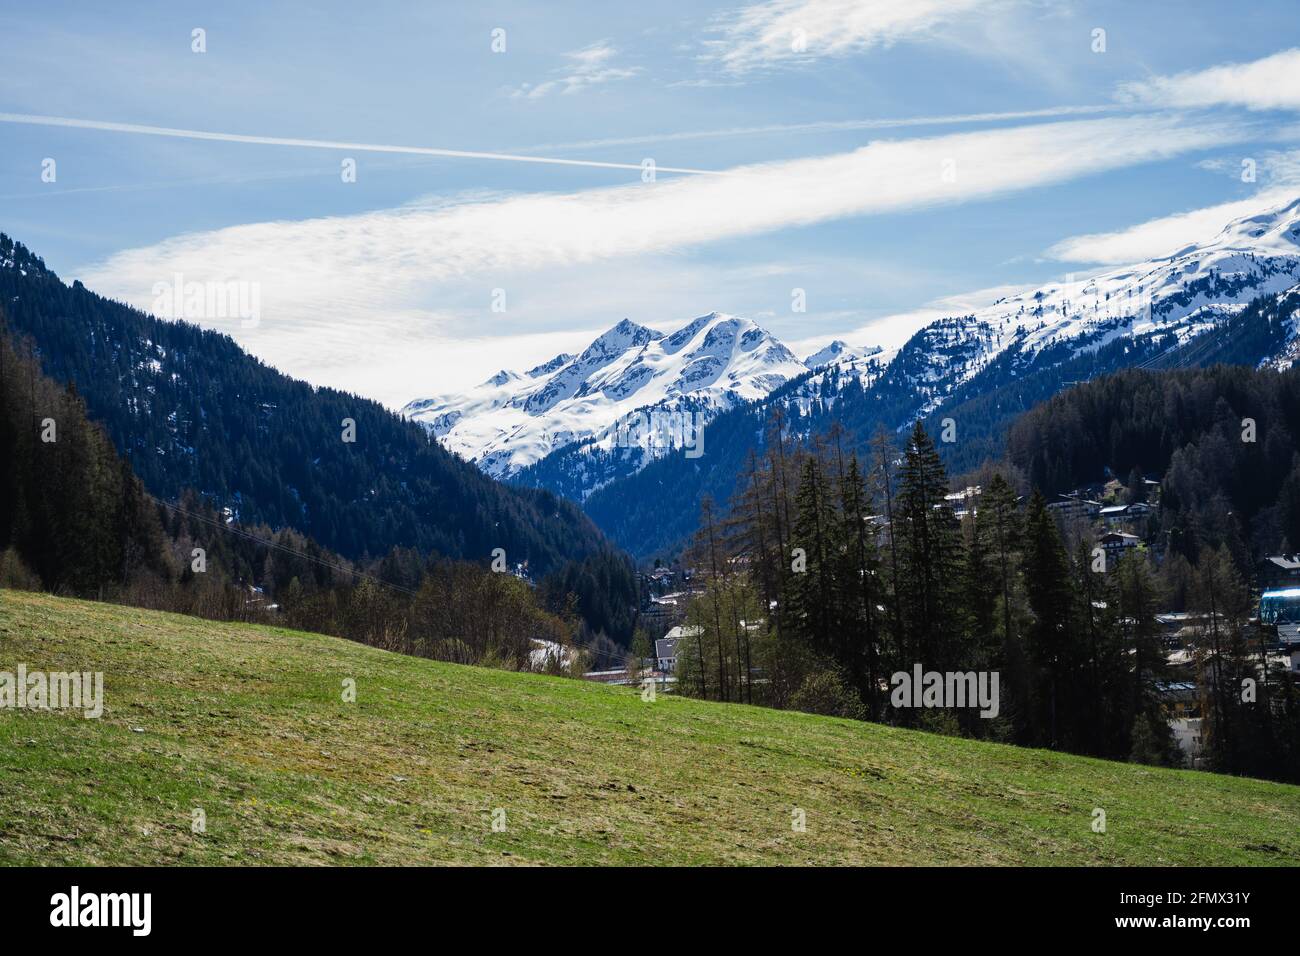 Blick von einem Grasfeld auf schneebedeckte Berge in St.Anton, Österreich. Coniefers und andere Bäume lassen die Szene grün und schön aussehen. Dorf Stockfoto